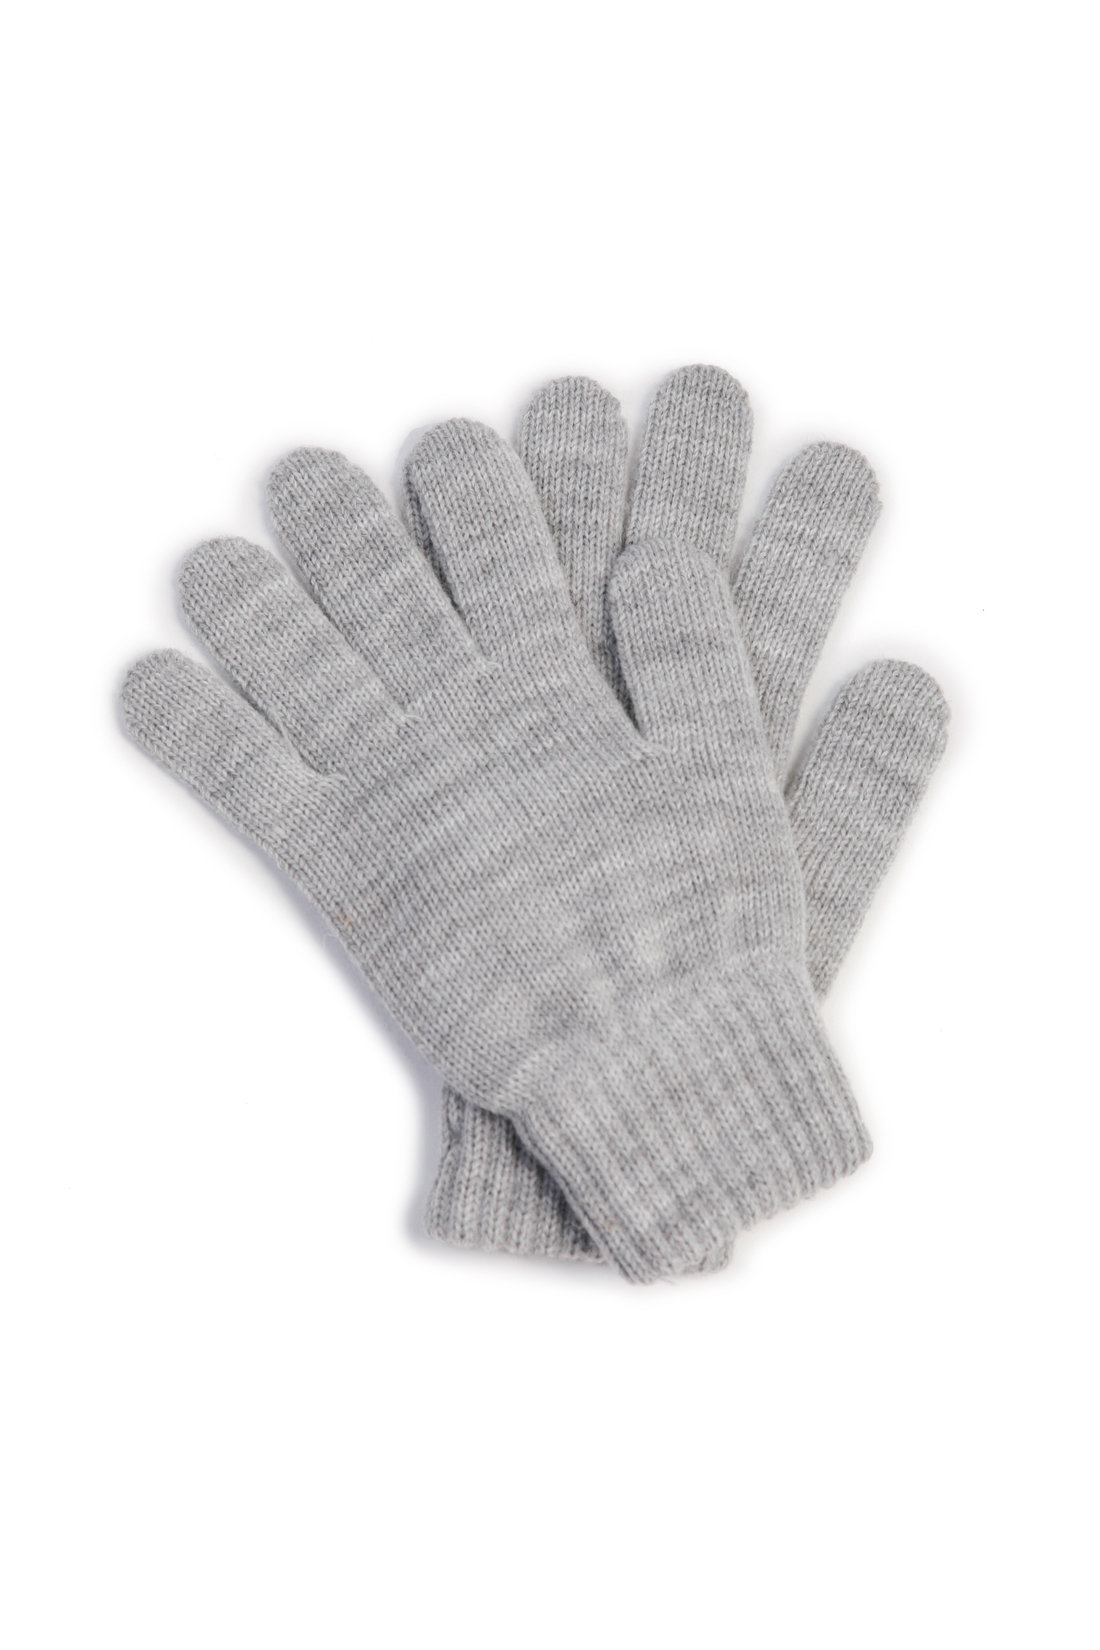 Базовые перчатки (арт. baon B368514), размер Без/раз, цвет silver melange#серый